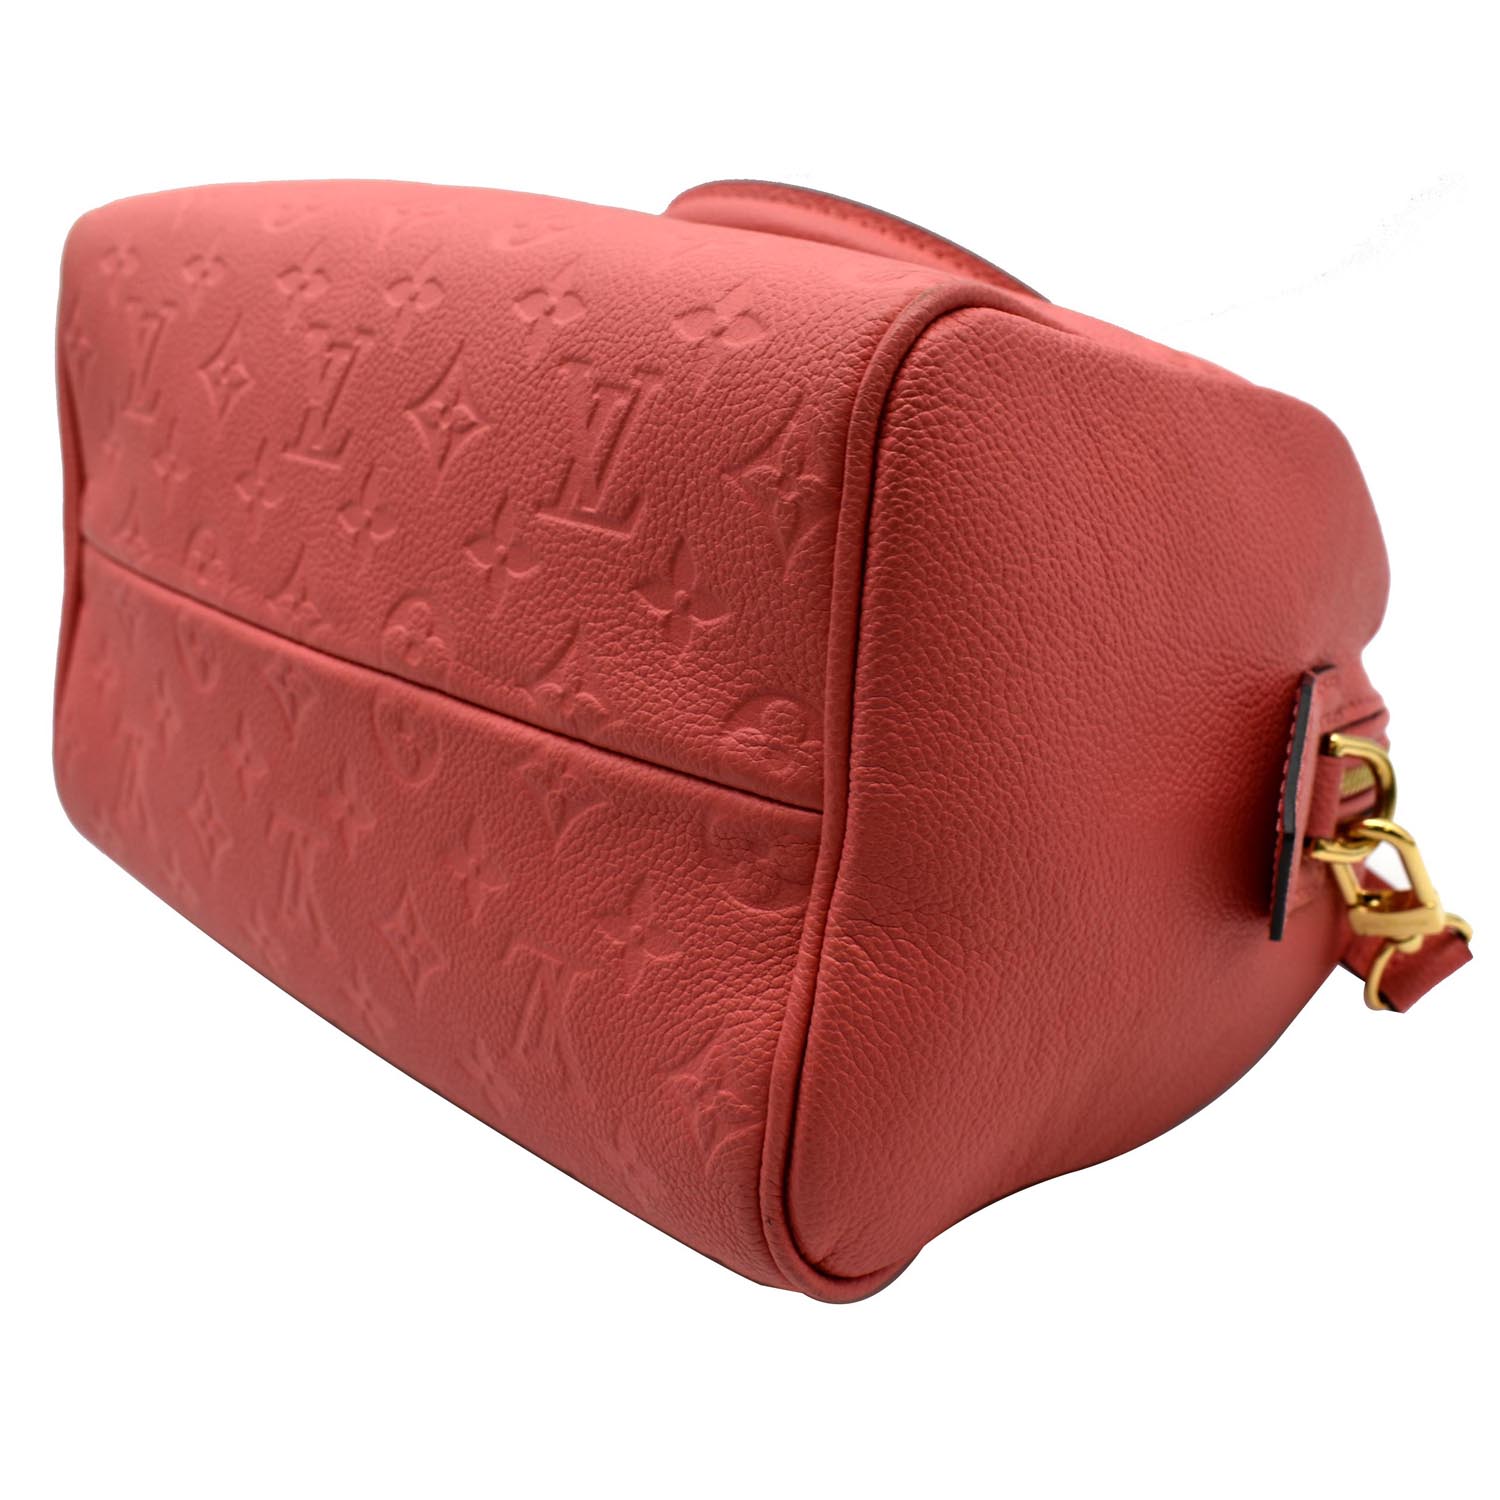 LOUIS VUITTON Speedy Empreinte 25 Shoulder bag in Red Leather Louis Vuitton